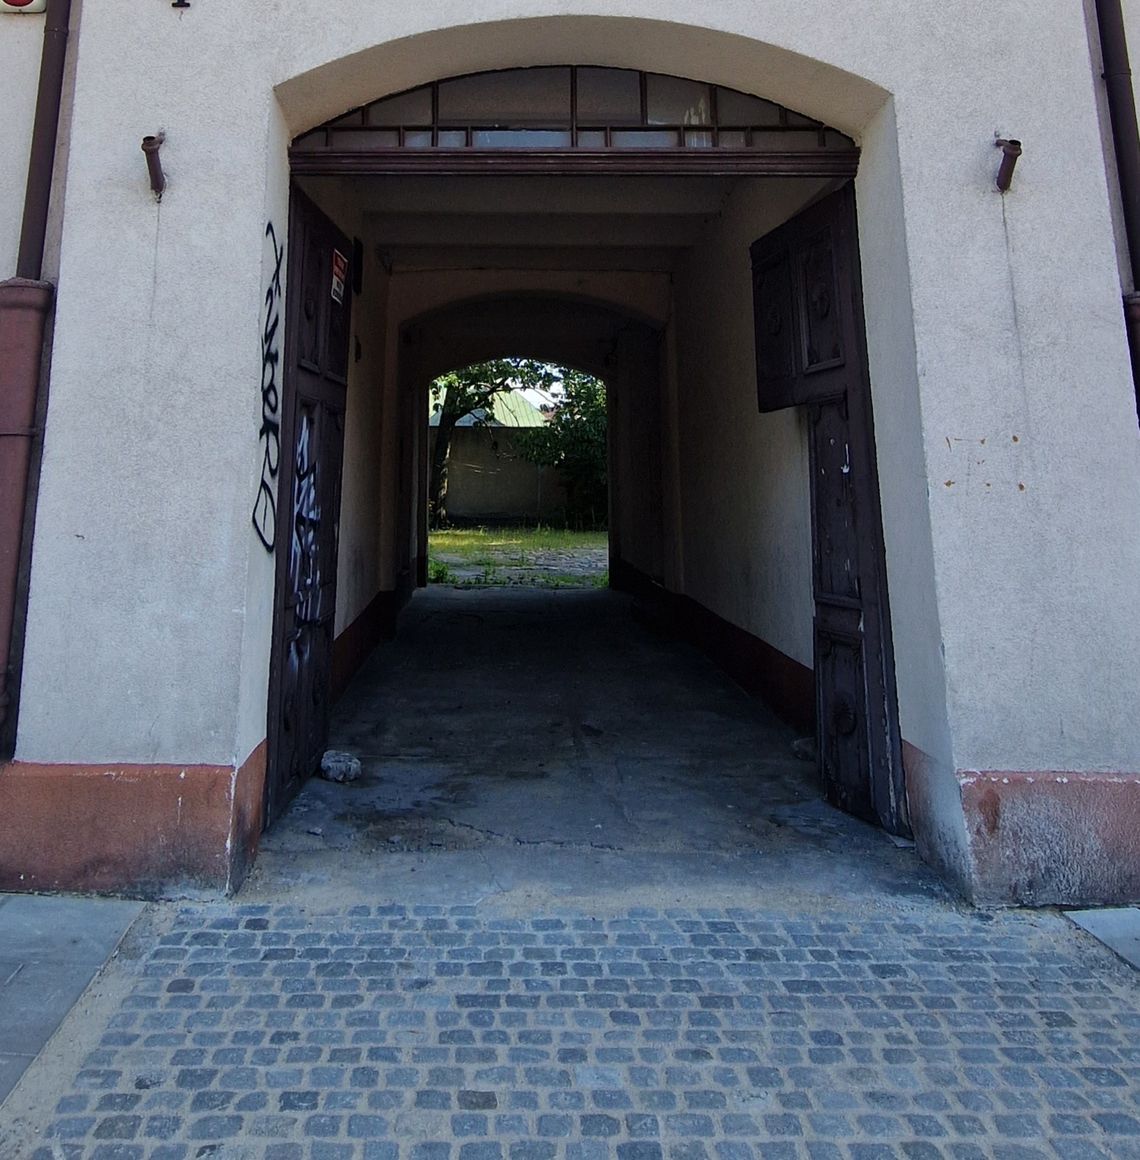 Kamienica w centrum Włocławka wystawiona na sprzedaż w popularnym portalu ogłoszeniowym. Ile chce właściciel?